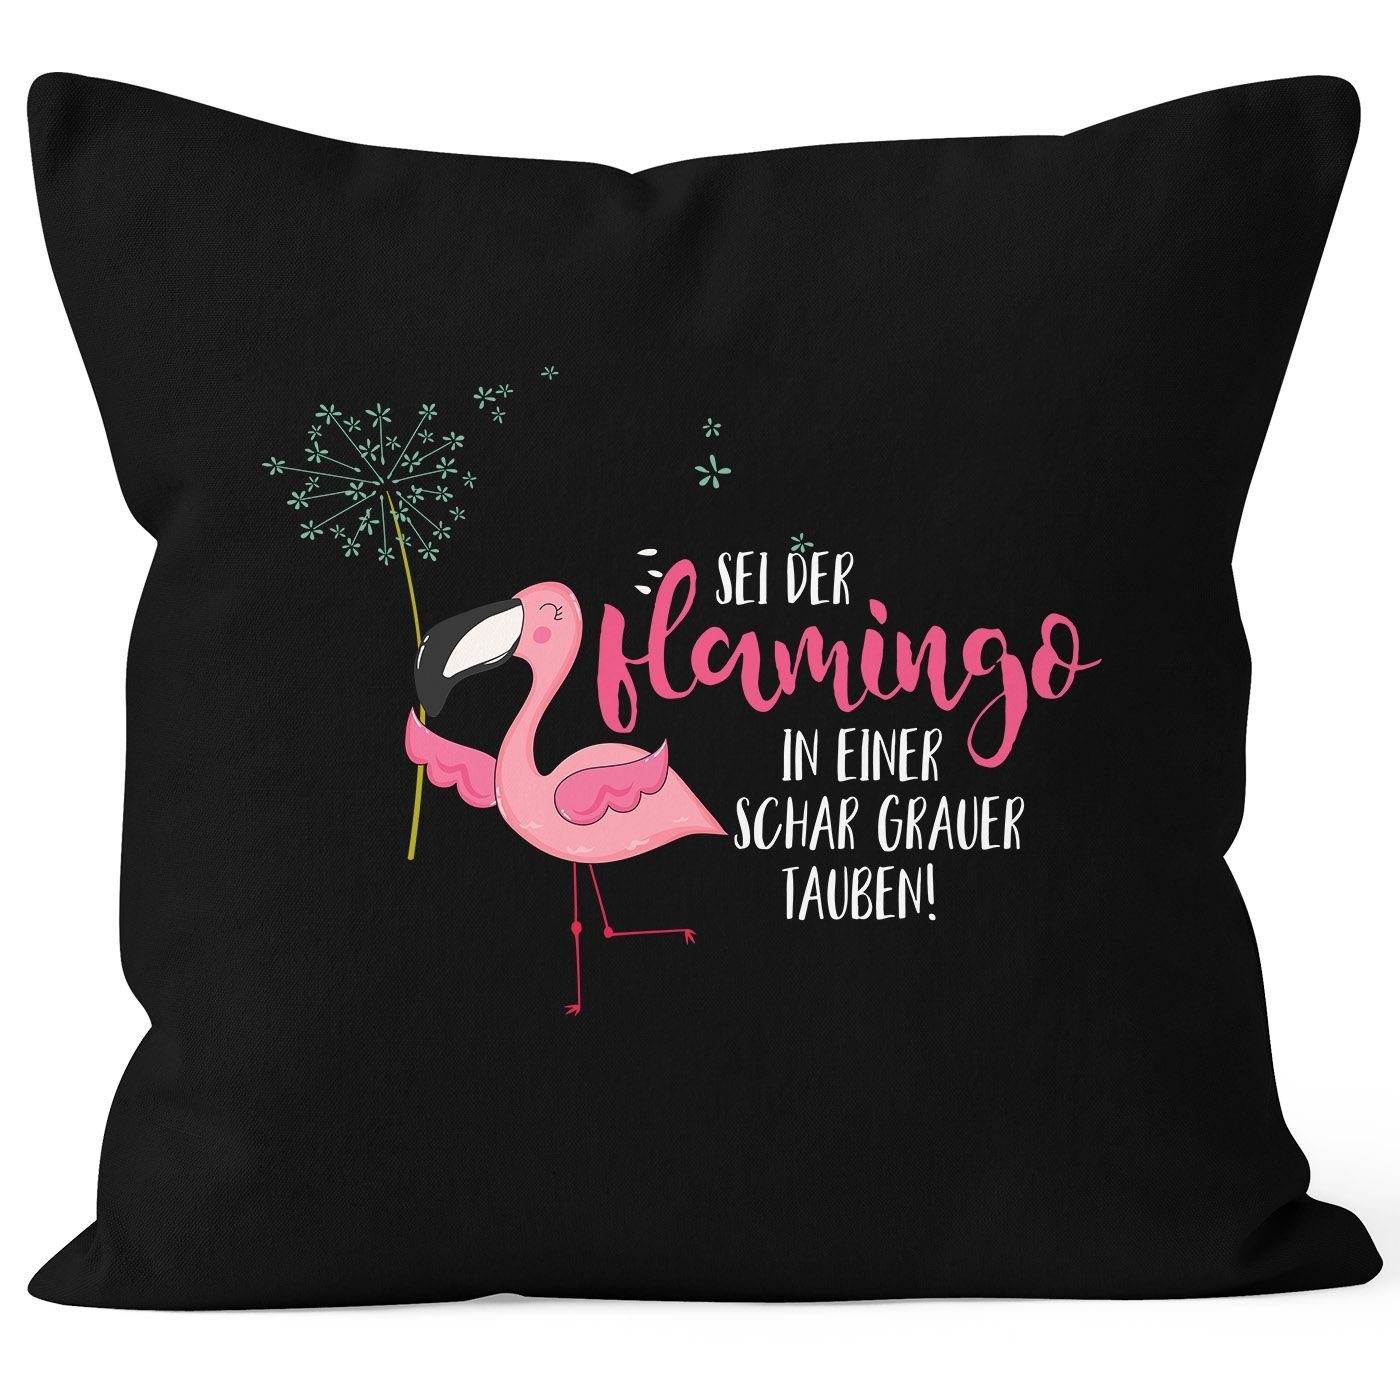 MoonWorks Dekokissen grauer Pusteblume Kissenbezug in Flamingo Kissen-Hülle Baumwolle schwarz der sei Deko-Kissen Tauben Schar MoonWorks® Flamingo einer 40x40